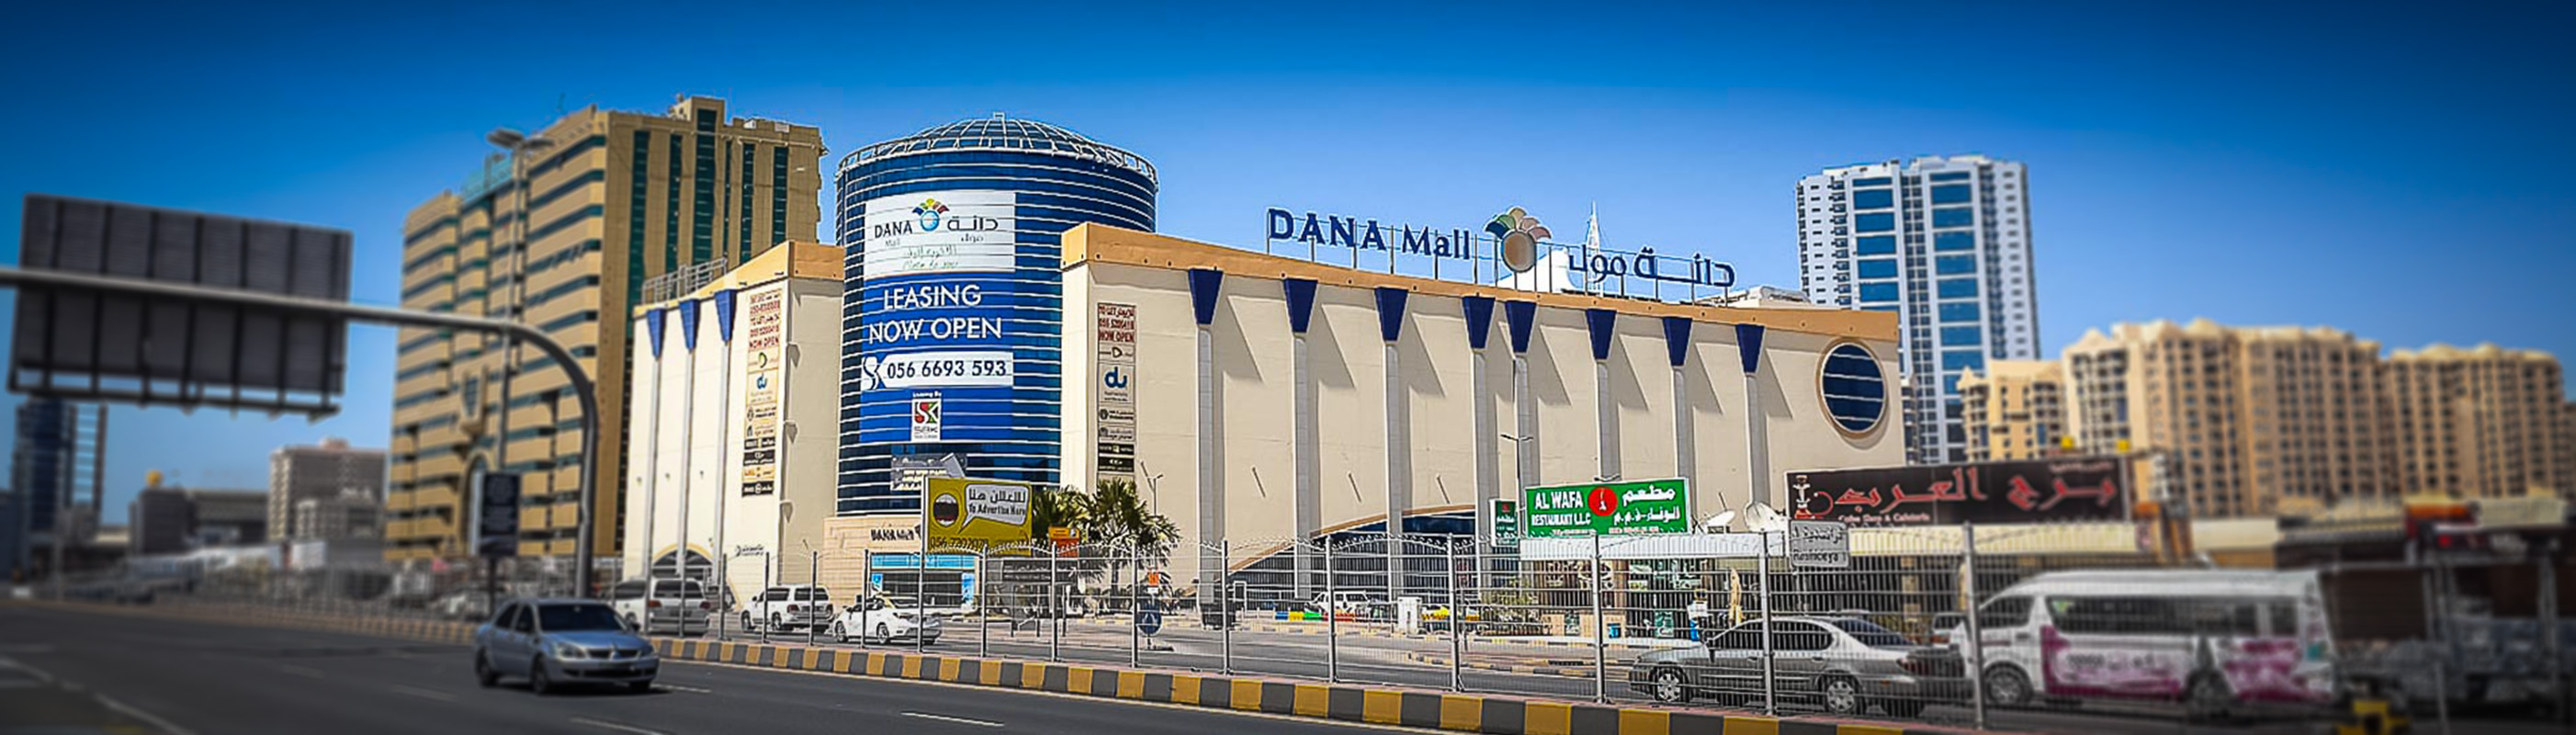 Al Dana Mall